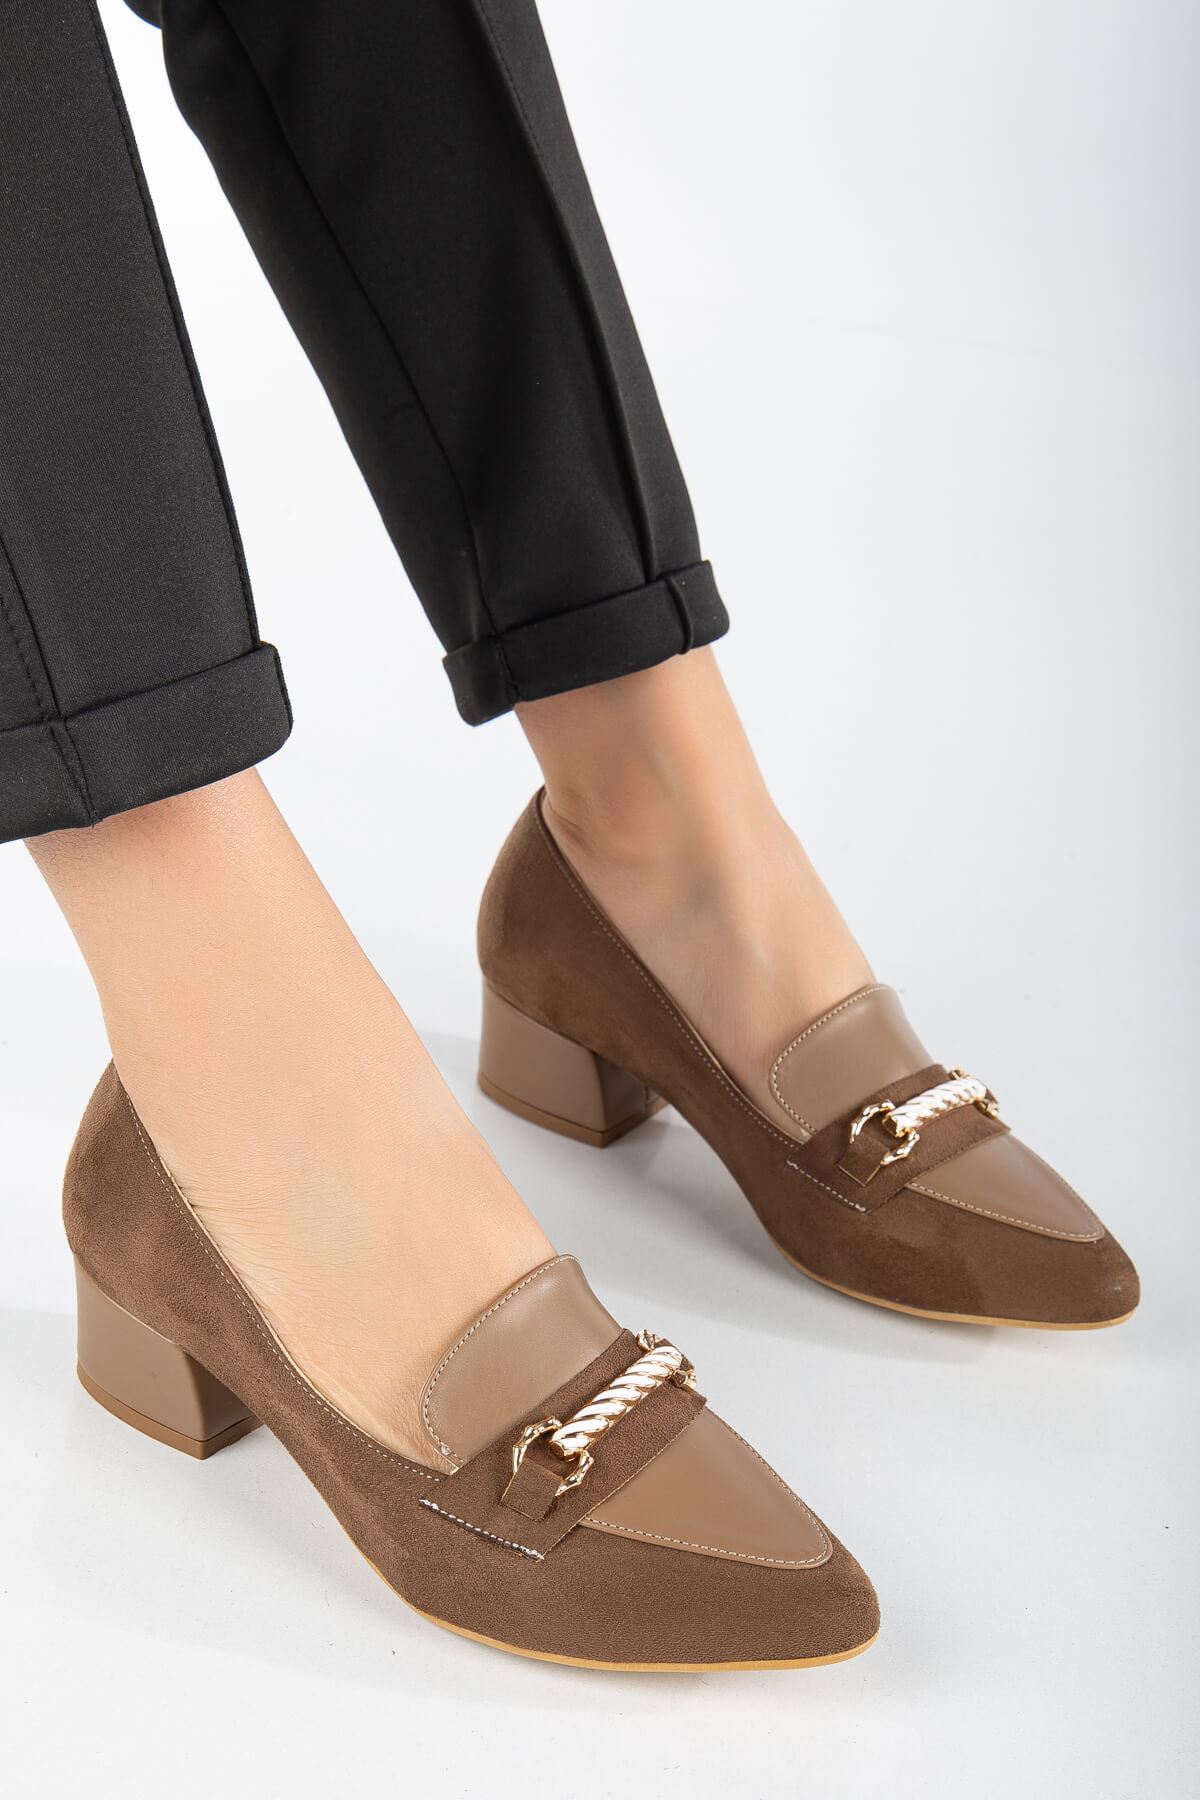 AUGUSTA Vizon Süet - Cilt Toka Detaylı Kadın Alçak Topuklu Ayakkabı